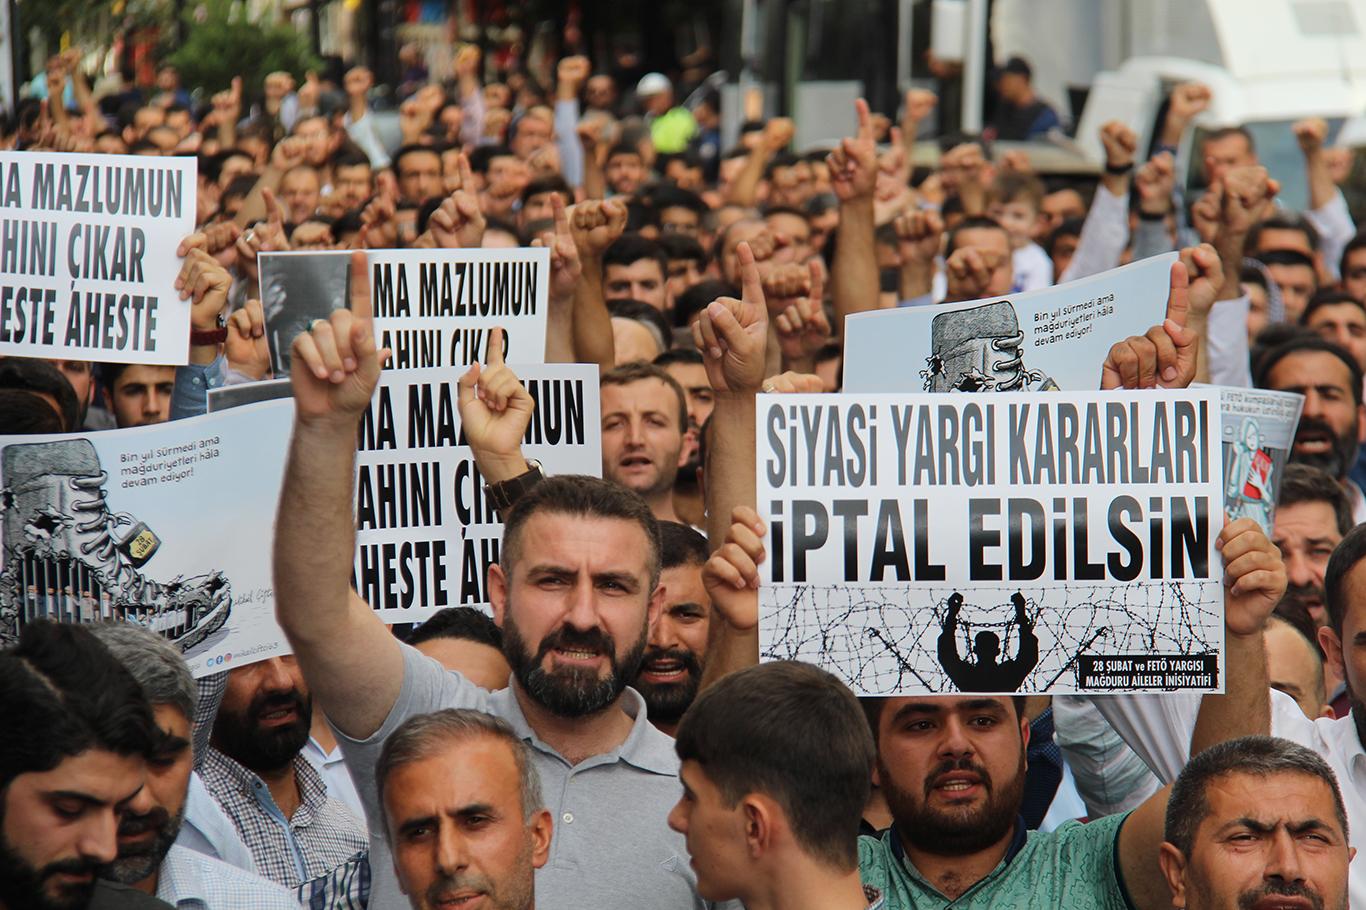  "28 Şubat ve FETÖ yargısı mağdurları 'artık yeter, artık adalet' diyor"